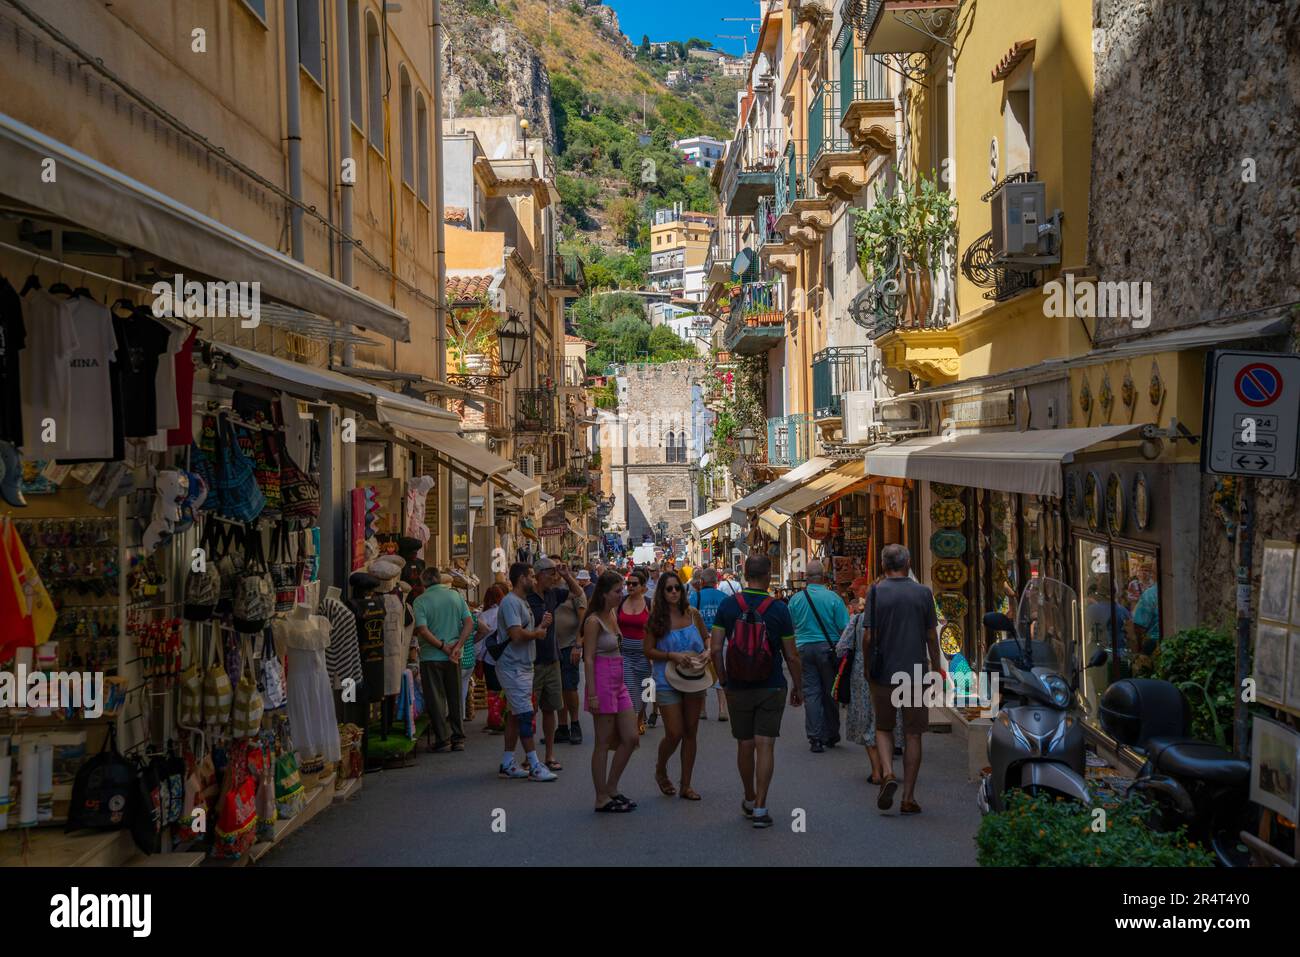 Vue sur la rue animée et l'escalade à flanc de colline en arrière-plan à Taormina, Taormina, Sicile, Italie, Europe Banque D'Images